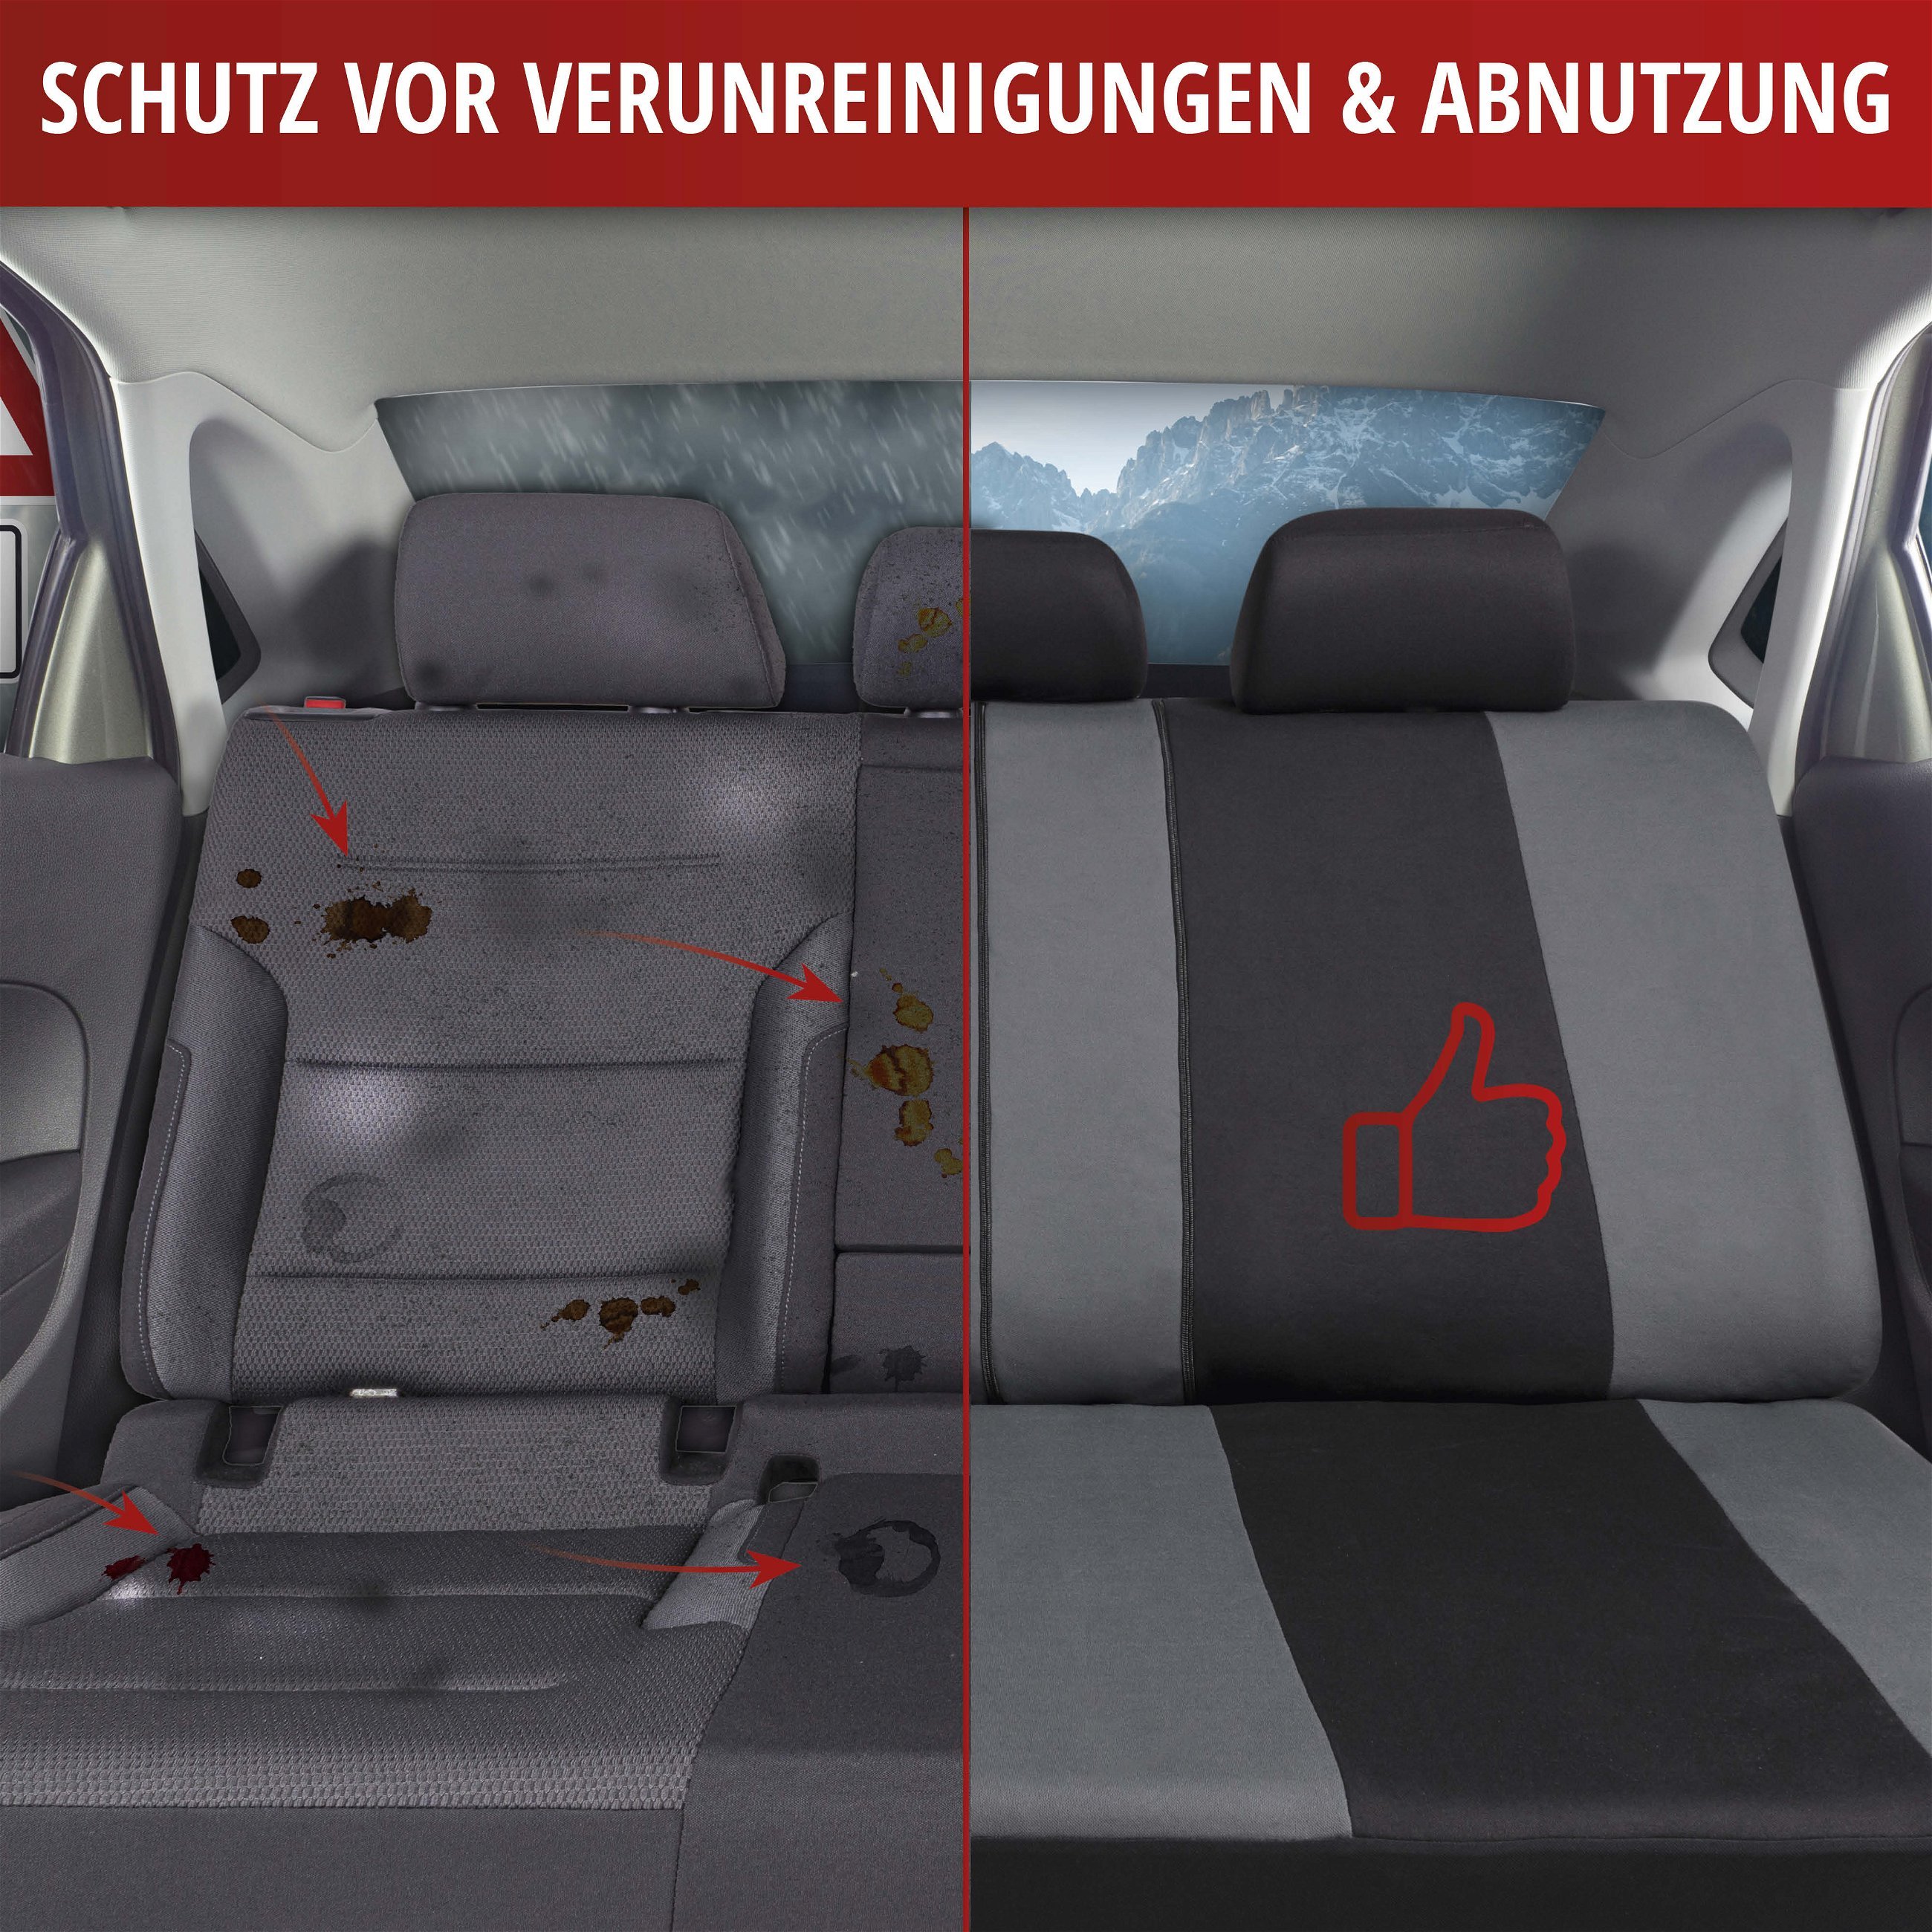 Autositzbezug ZIPP-IT Premium Inde, PKW-Schonbezüge Komplettset mit Reißverschluss-System schwarz/grau